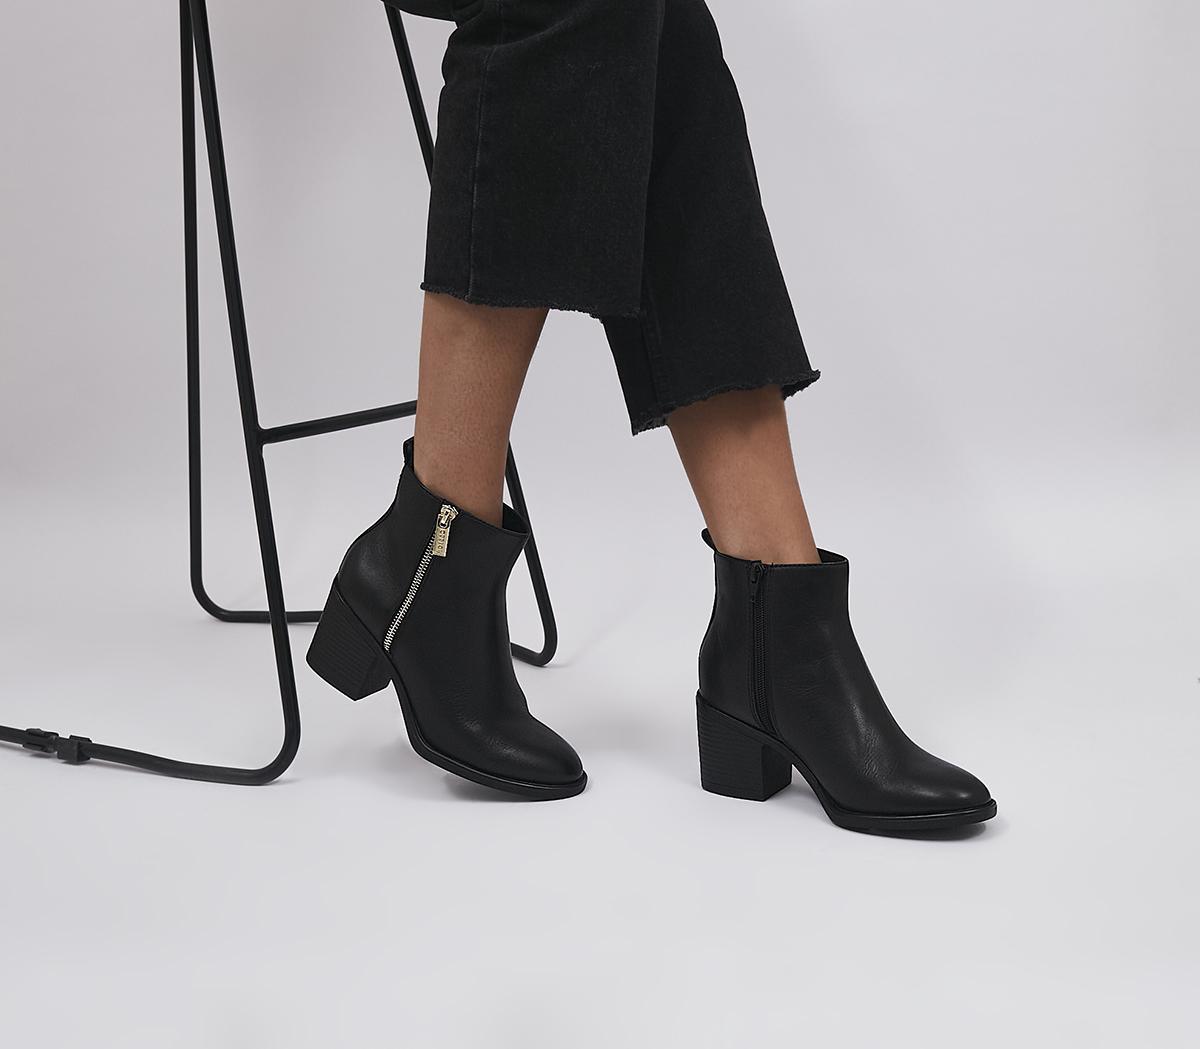 OFFICEAmado Zip Block Heel Ankle BootsBlack Leather